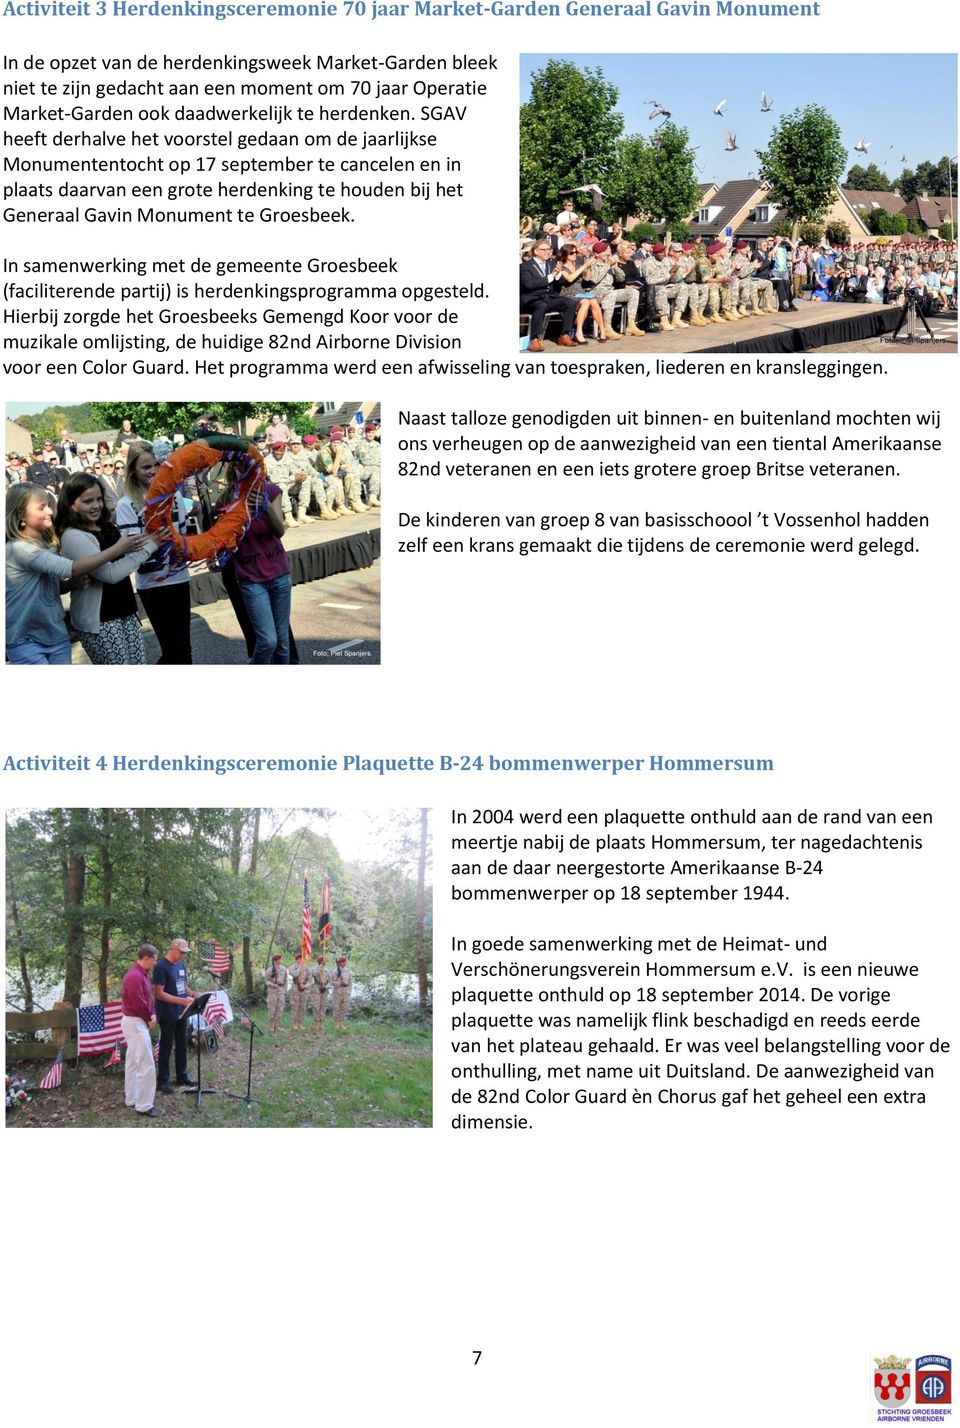 SGAV heeft derhalve het voorstel gedaan om de jaarlijkse Monumententocht op 17 september te cancelen en in plaats daarvan een grote herdenking te houden bij het Generaal Gavin Monument te Groesbeek.